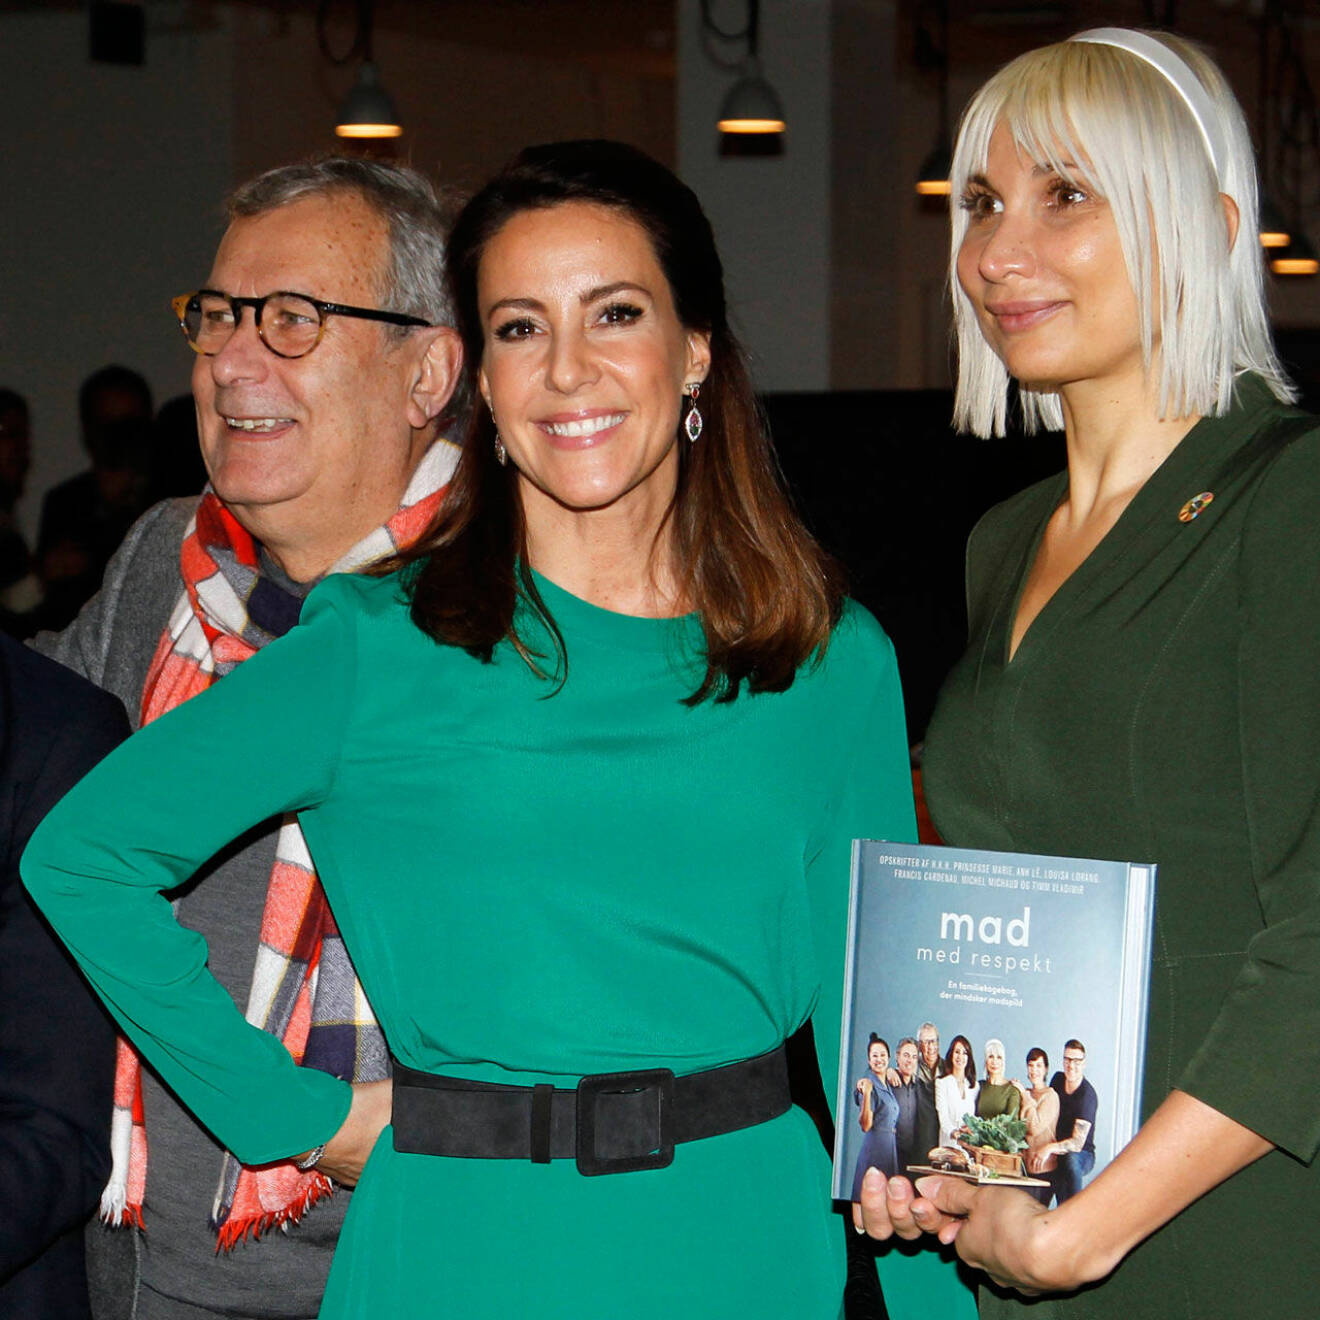 Prinsessan Marie lanserade sin nya kokbok ”Mad med respekt” (Gyldendal Forlag) i kampen mot matsvinnet.